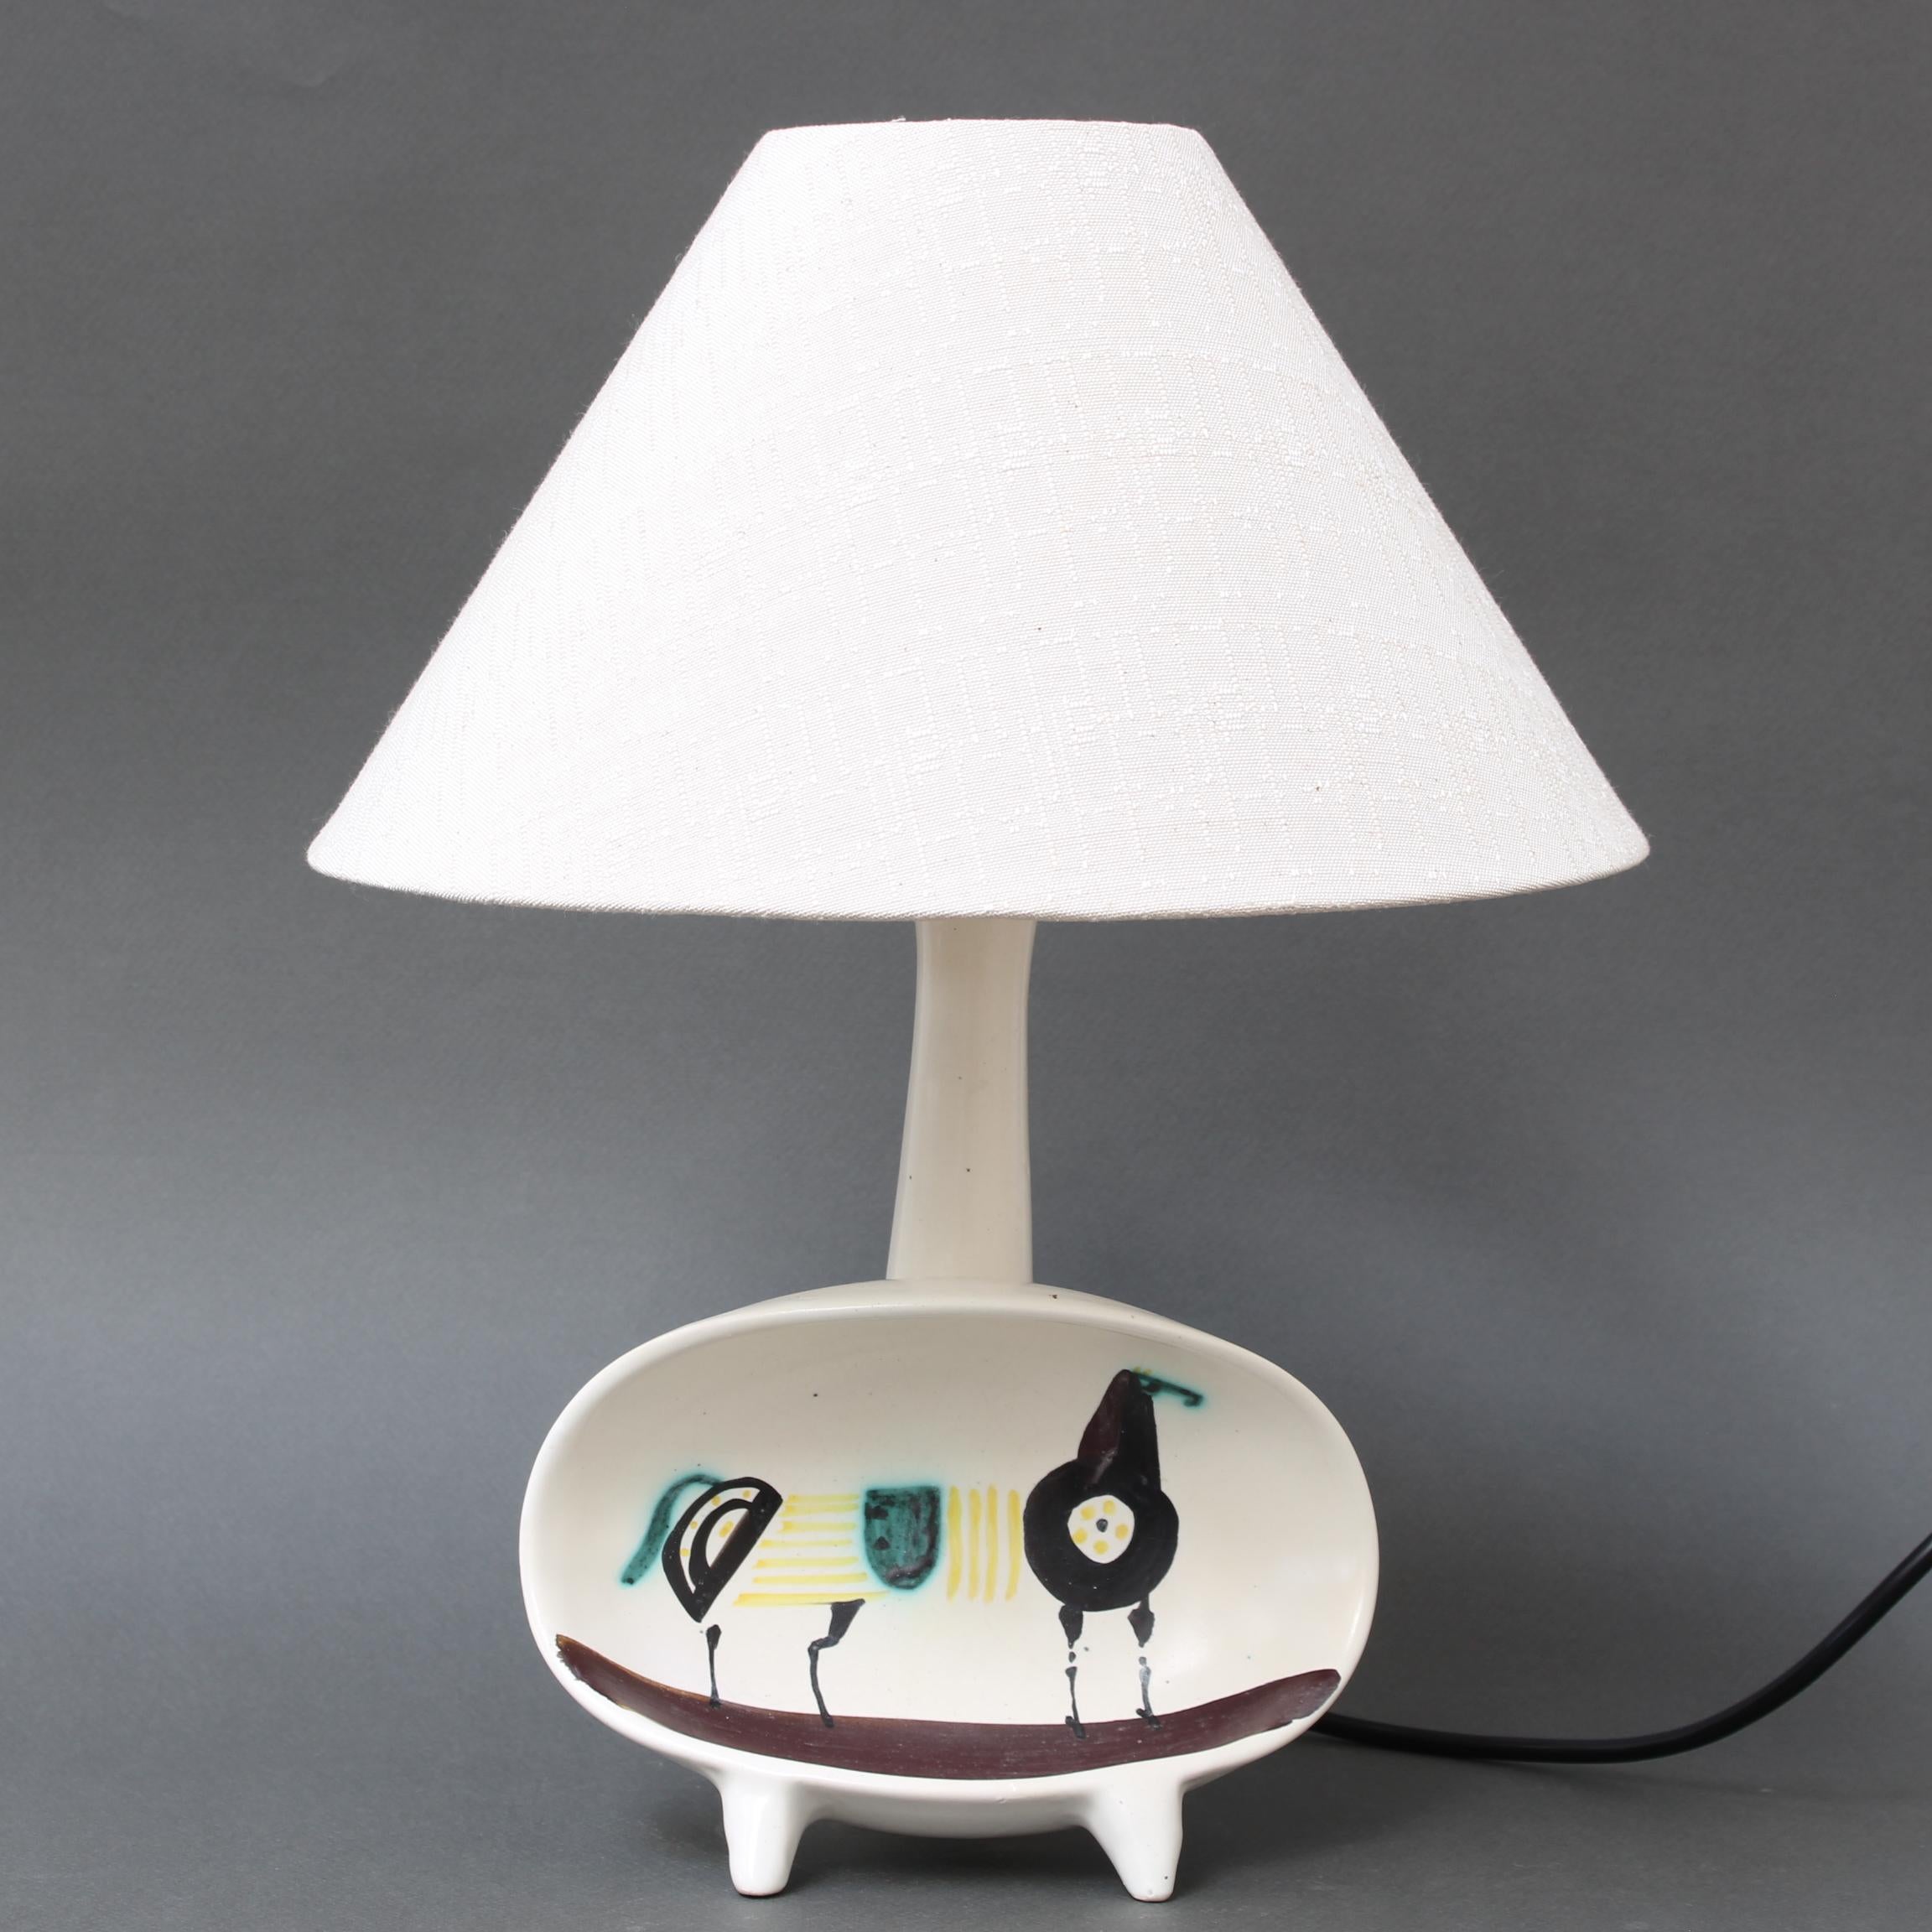 Lampe décorative française en céramique avec cheval peint à la main par Roger Capron (circa 1950s). Il s'agit de la 